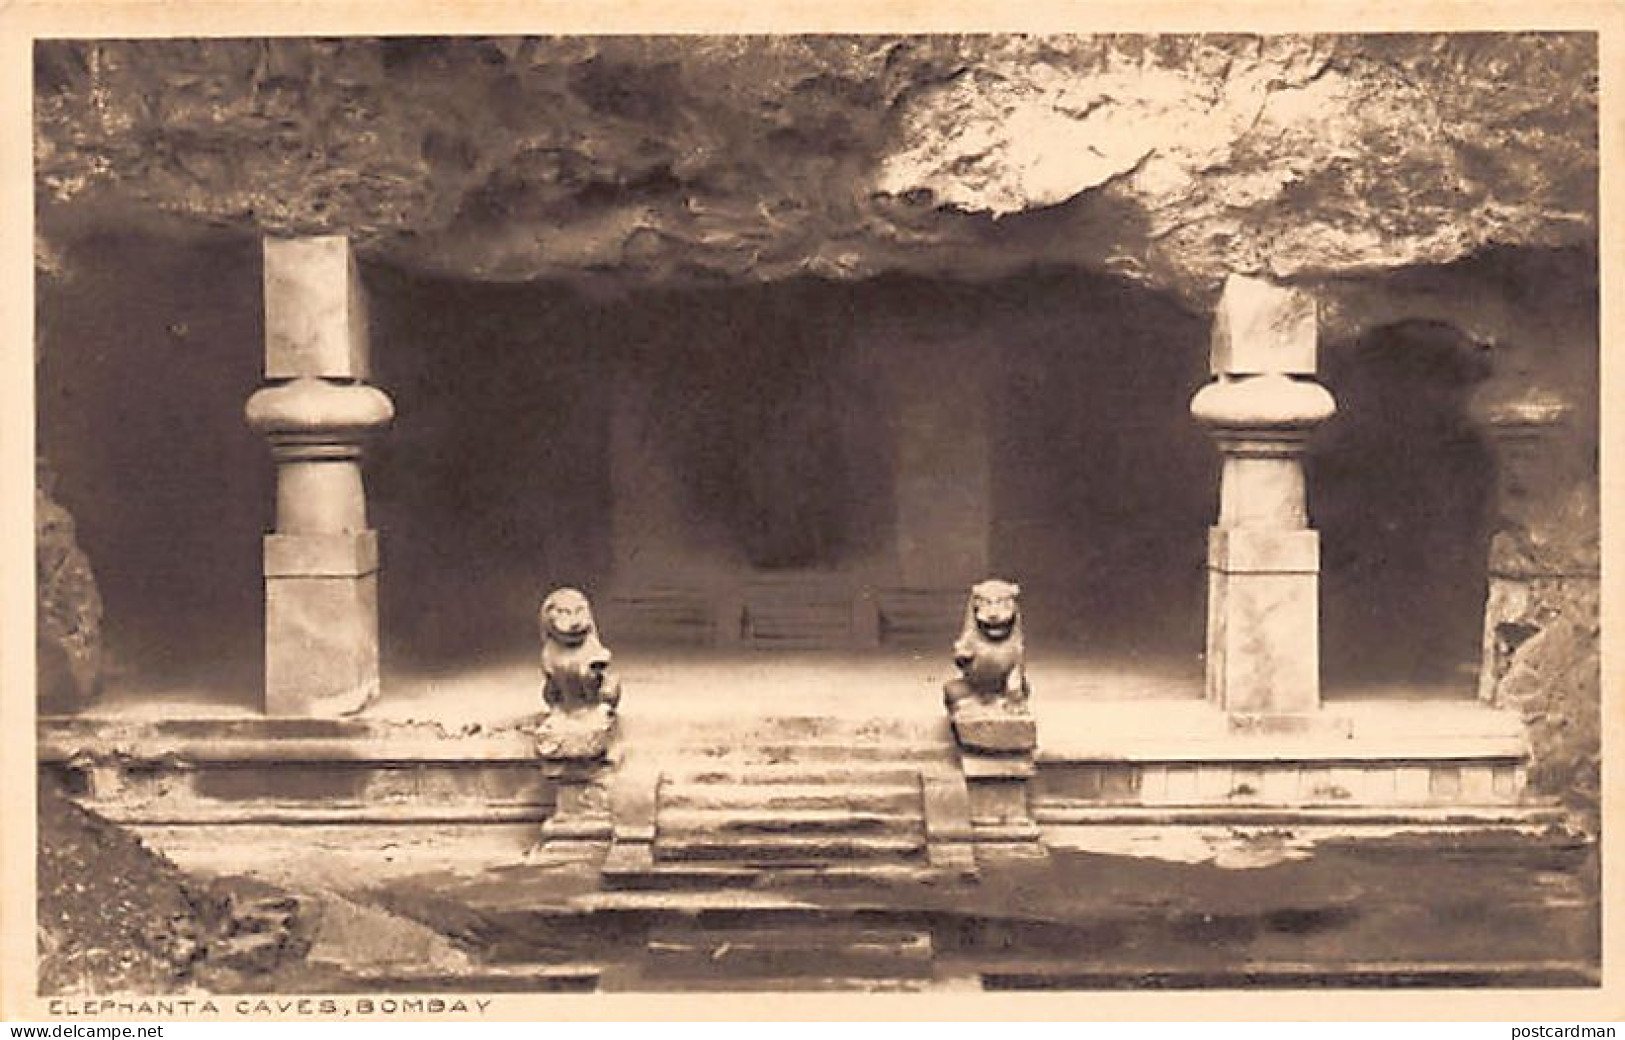 India - MUMBAI Bombay - Elephanta Caves - Publ. Thacker & Co. 21 - Inde